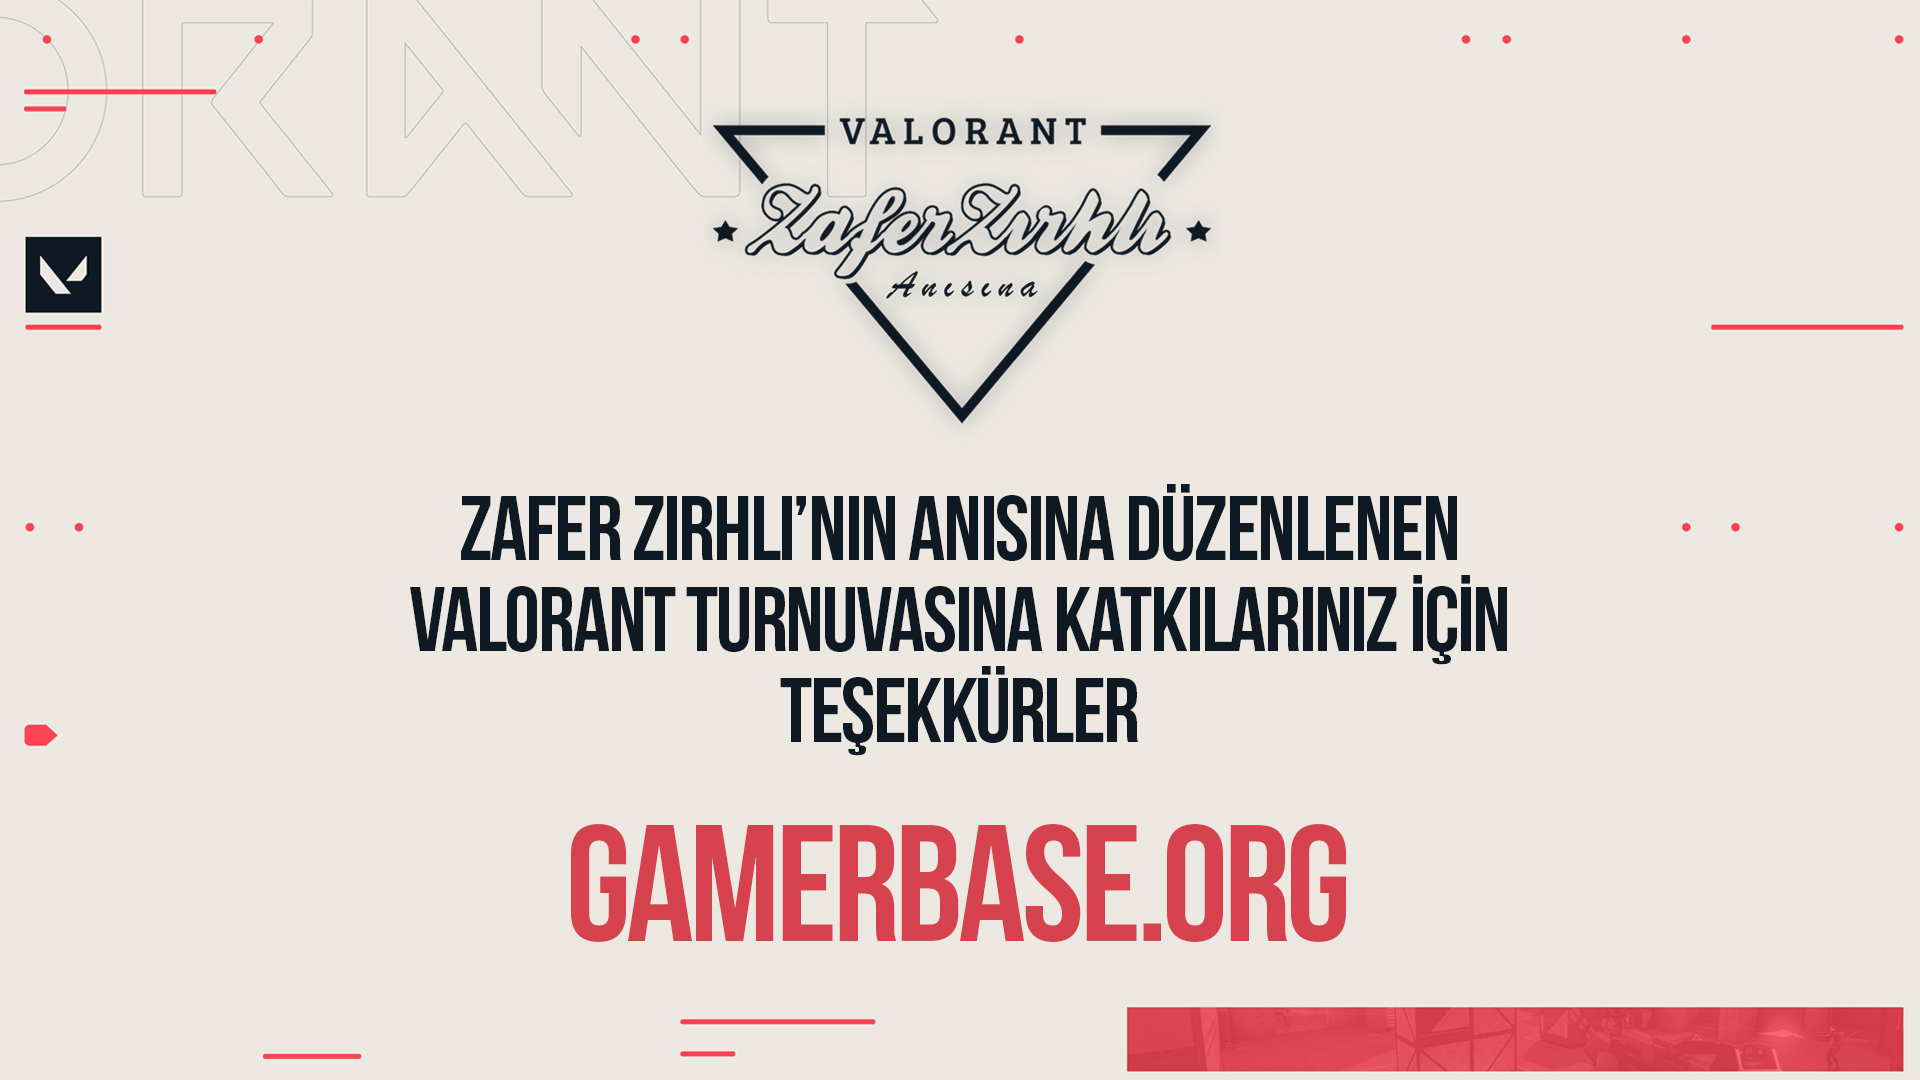 Teşekkürler Gamerbase.org & Ebubekir Hatıl